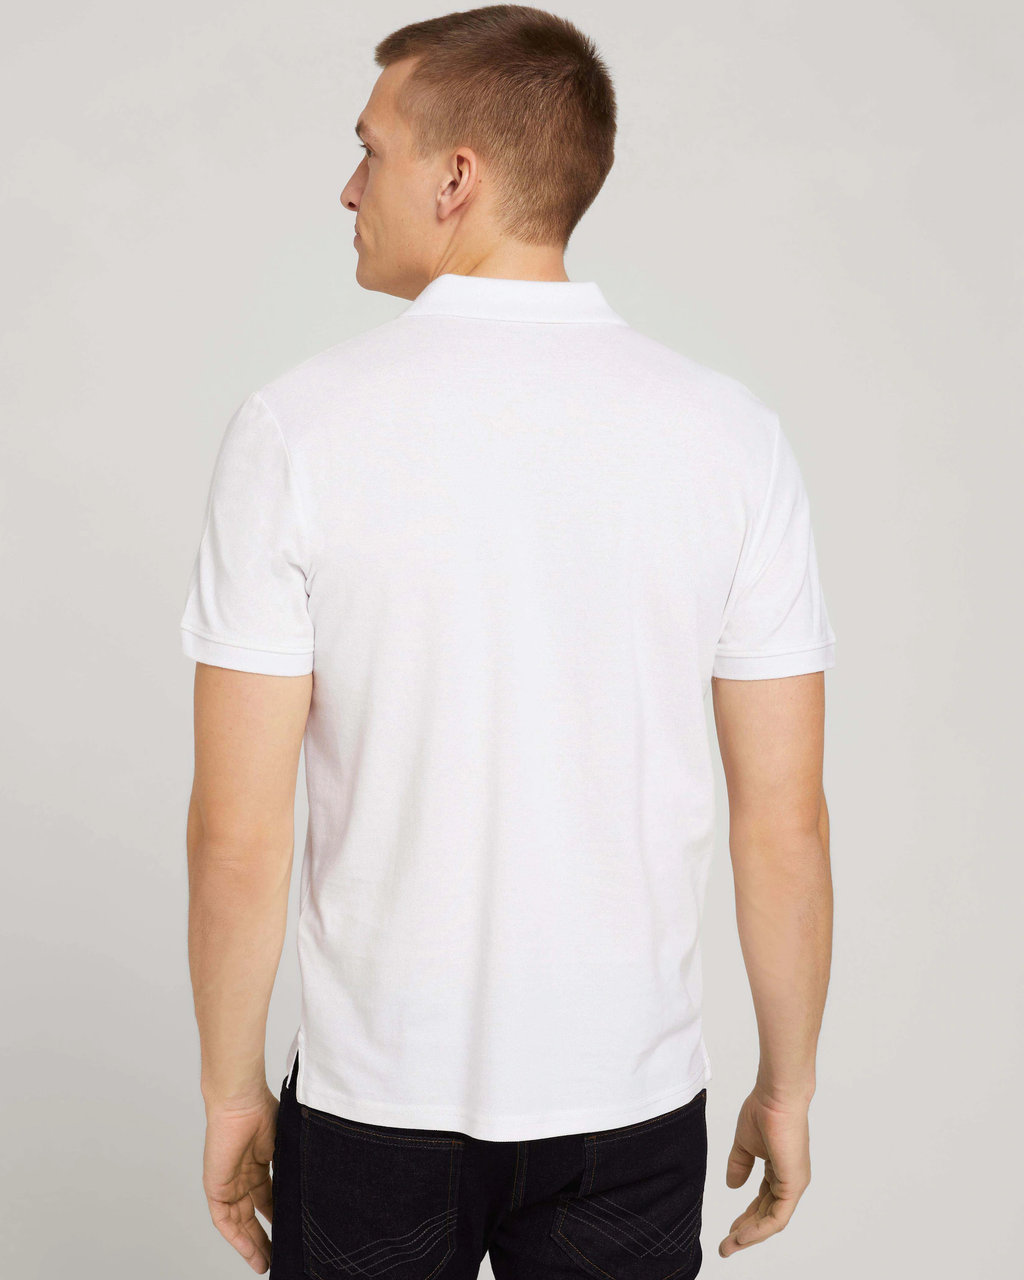 | White shirt polo Basic Tailor handsandhead Tom